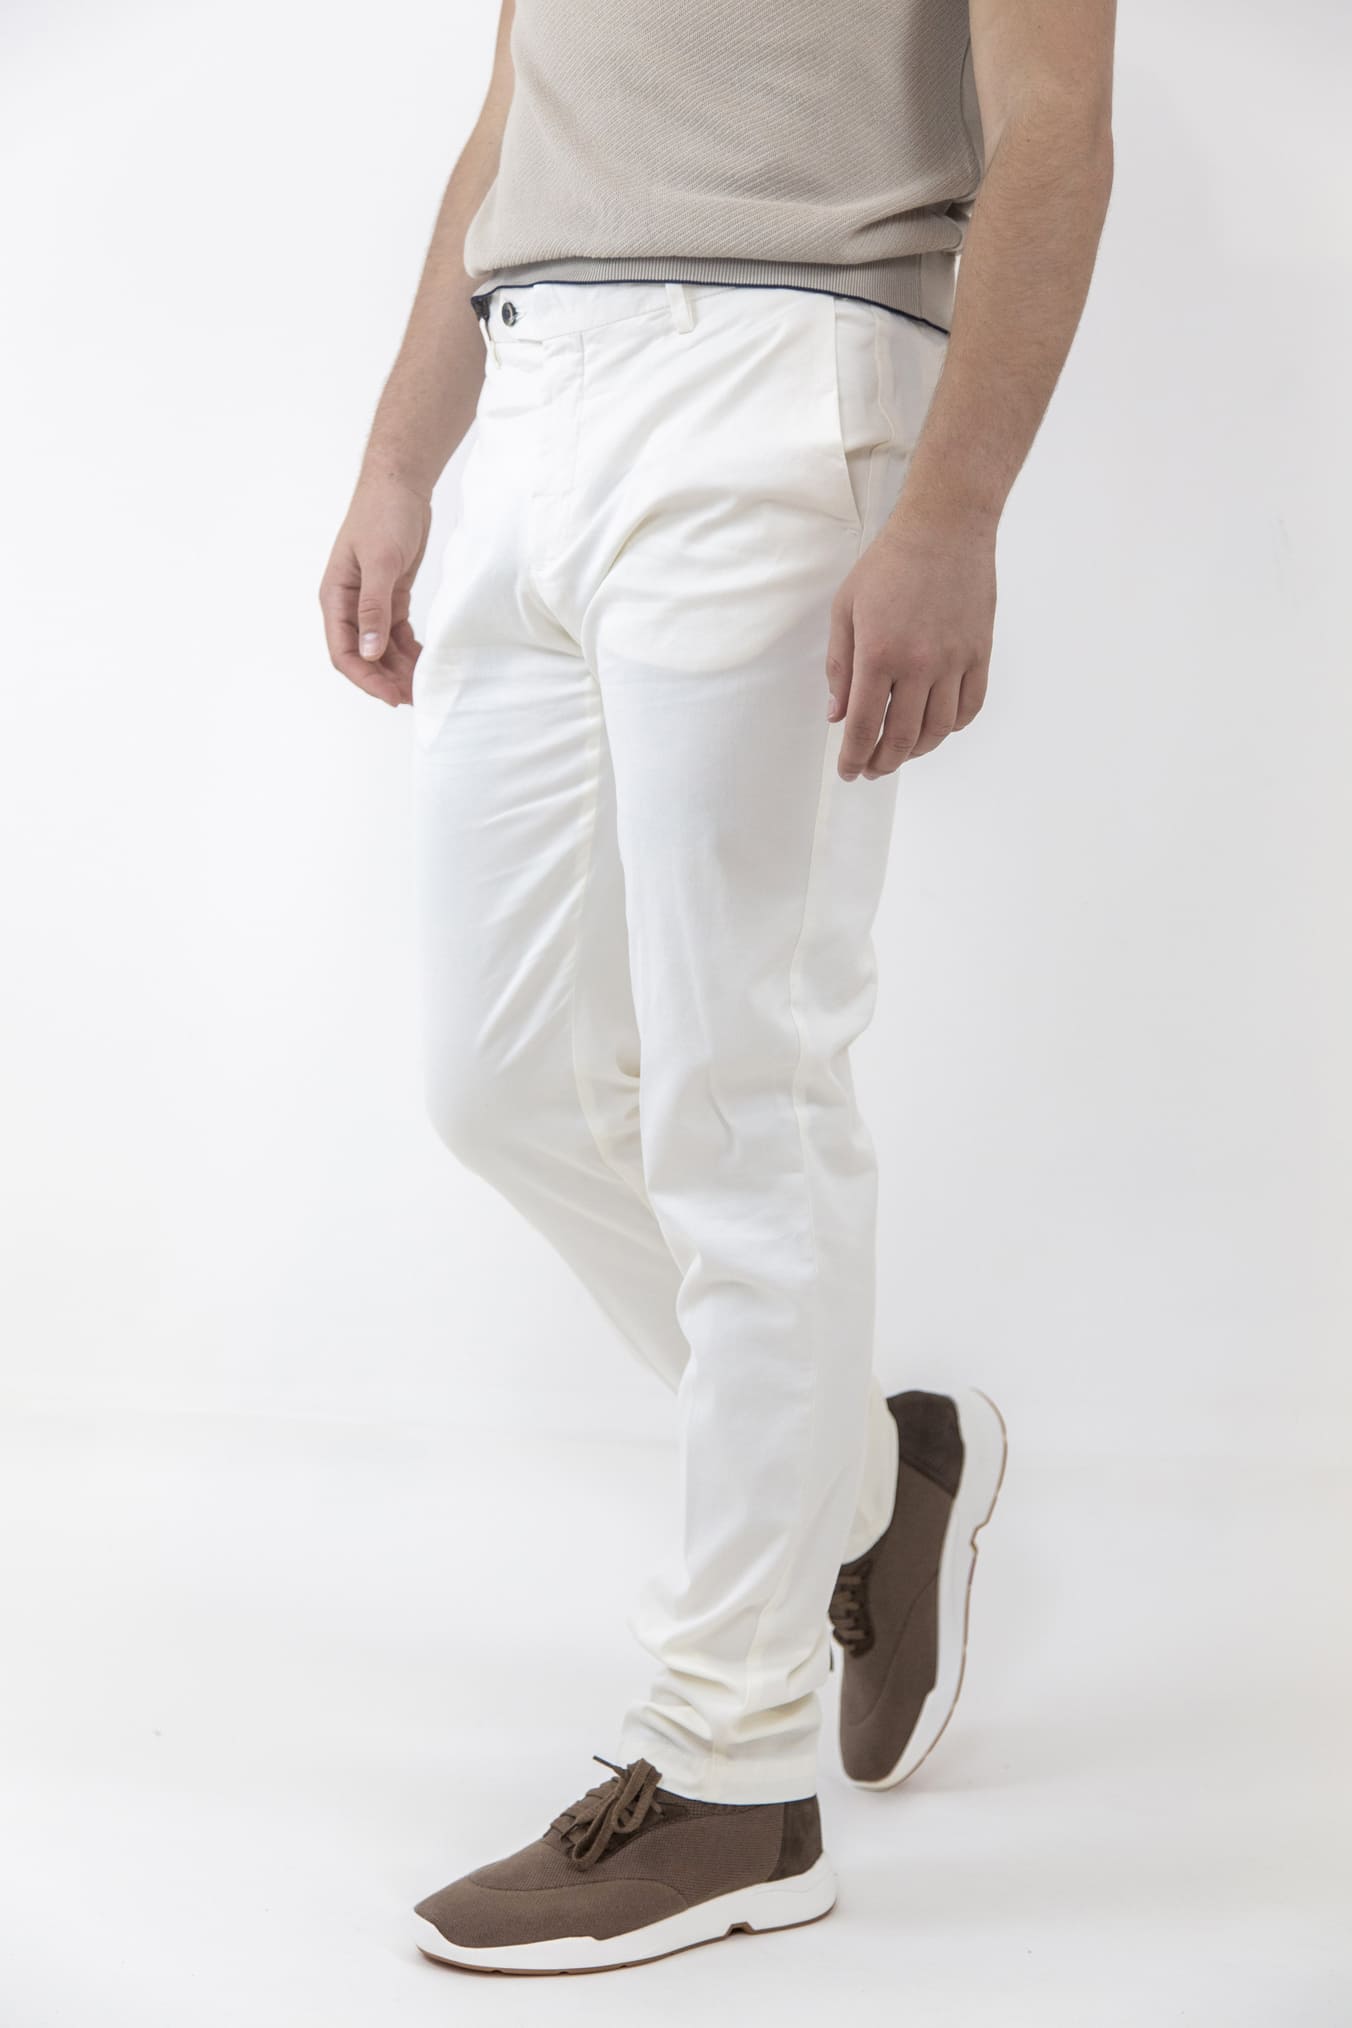 GUARINO Pantaloni Cotone e Seta Bianco Panna